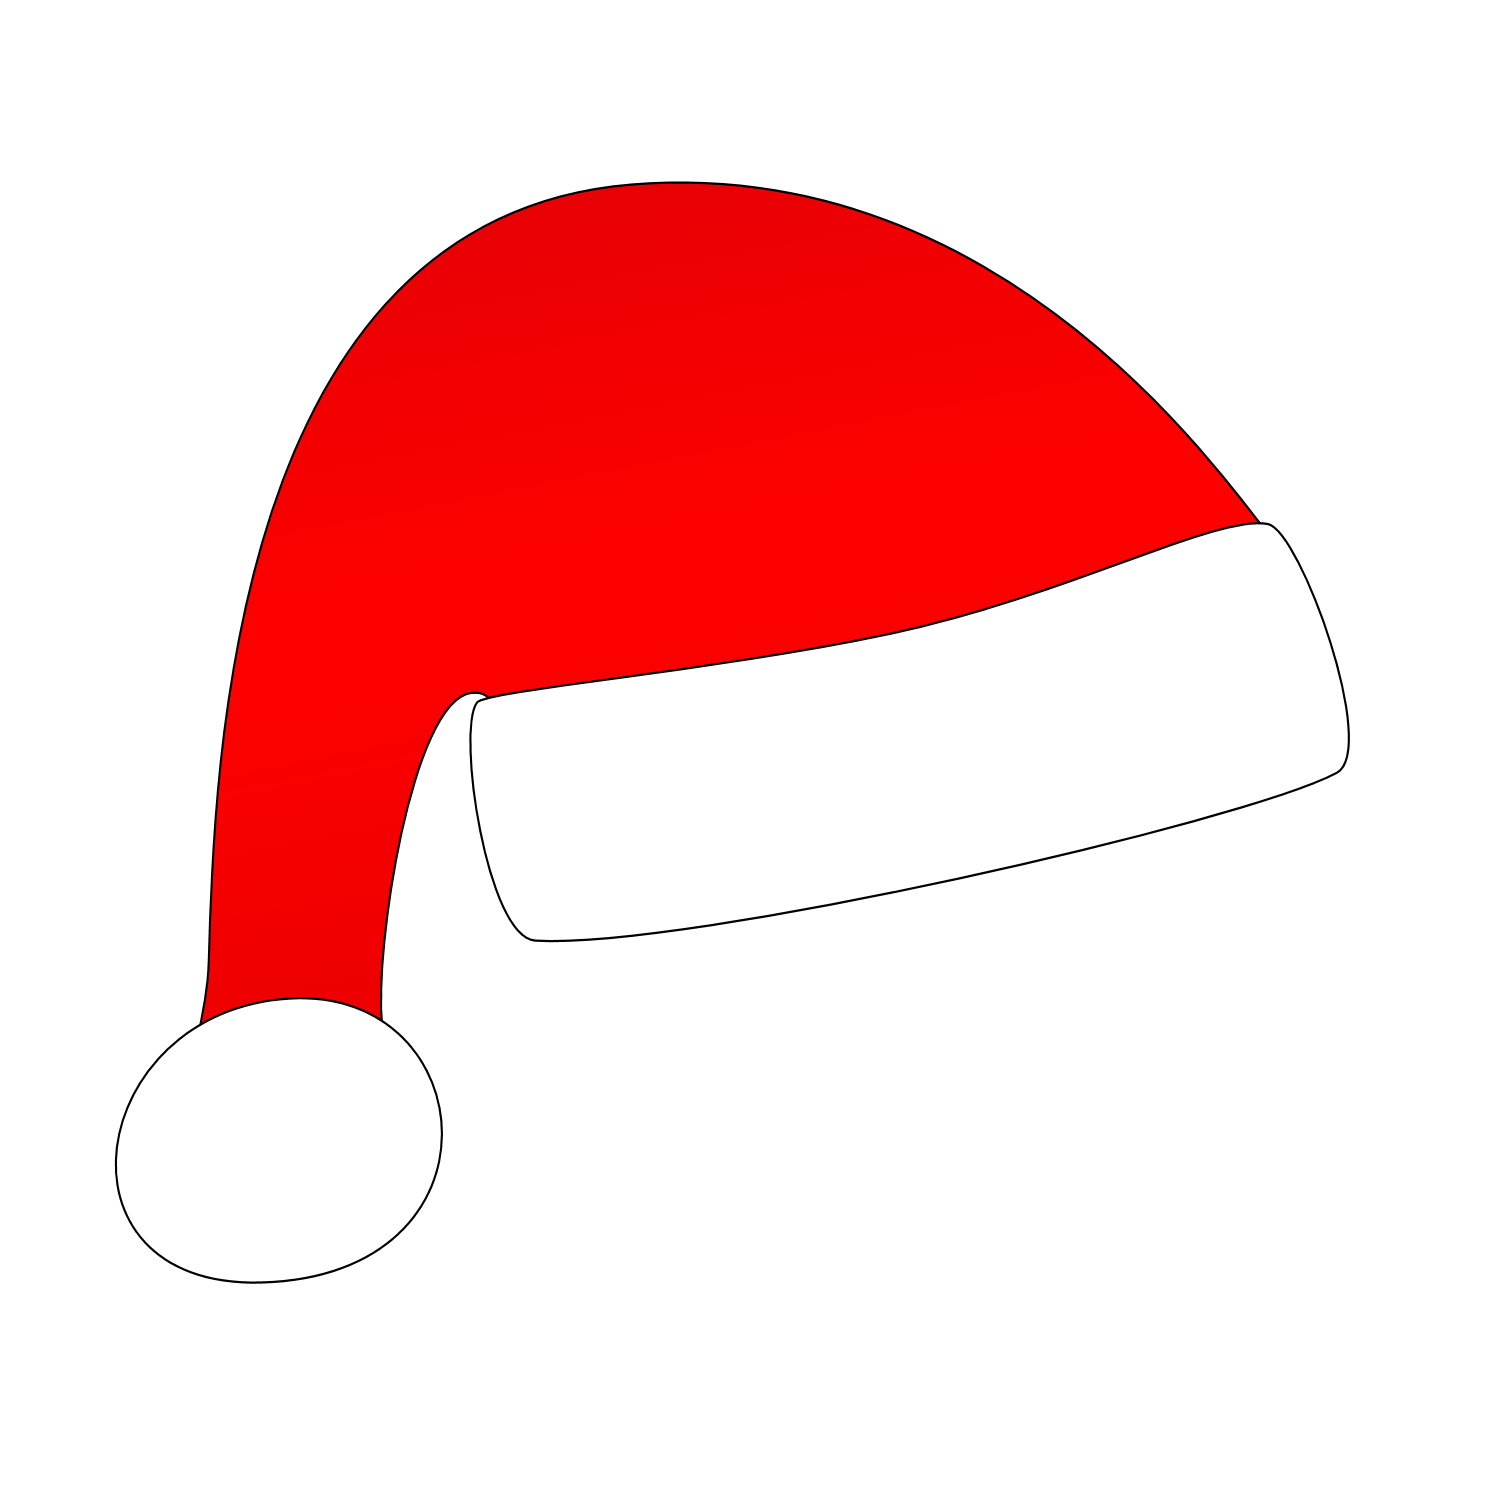 Red Santa Claus Hat - Free .